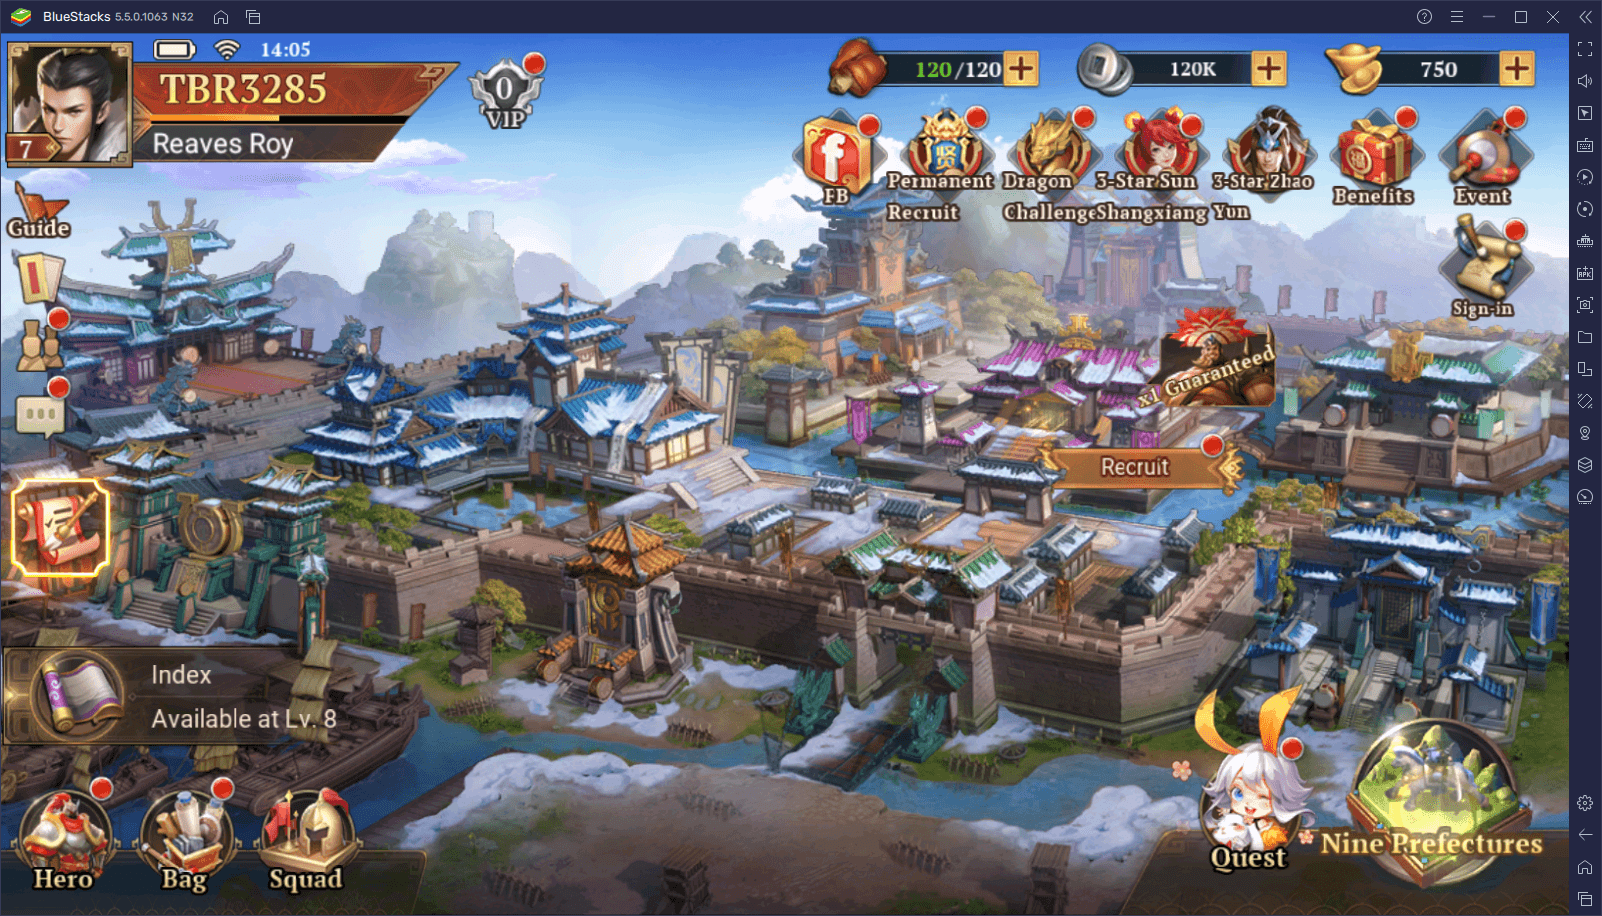 Dynasty Origins: Conquest – wie du unsere BlueStacks-Features benutzt, um dein Spielerlebnis zu verbessern